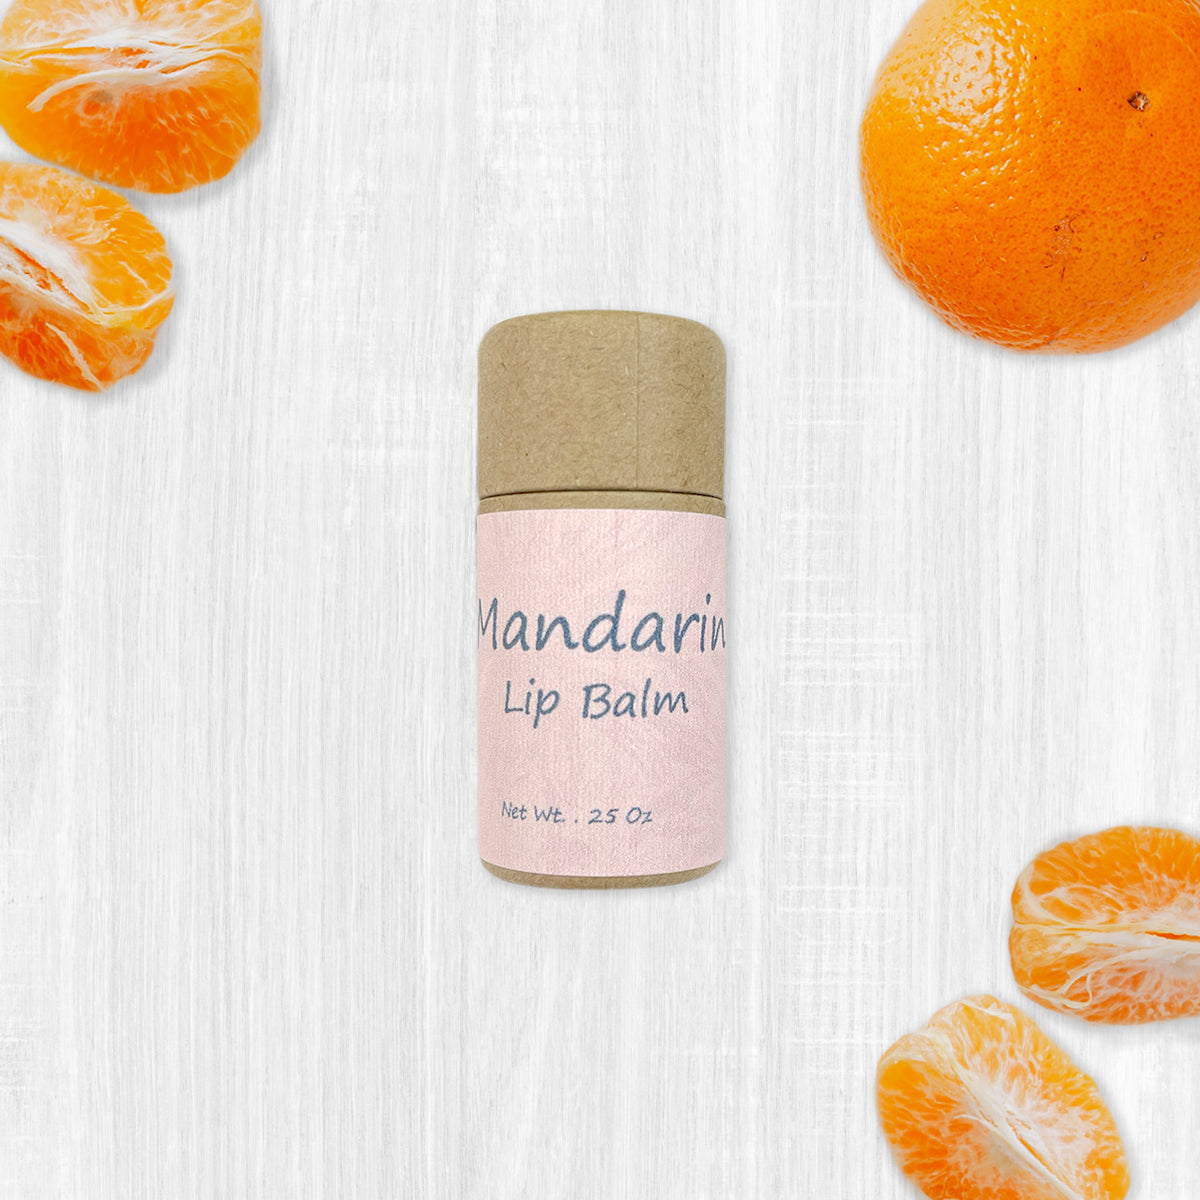 Mandarin Lip Balm